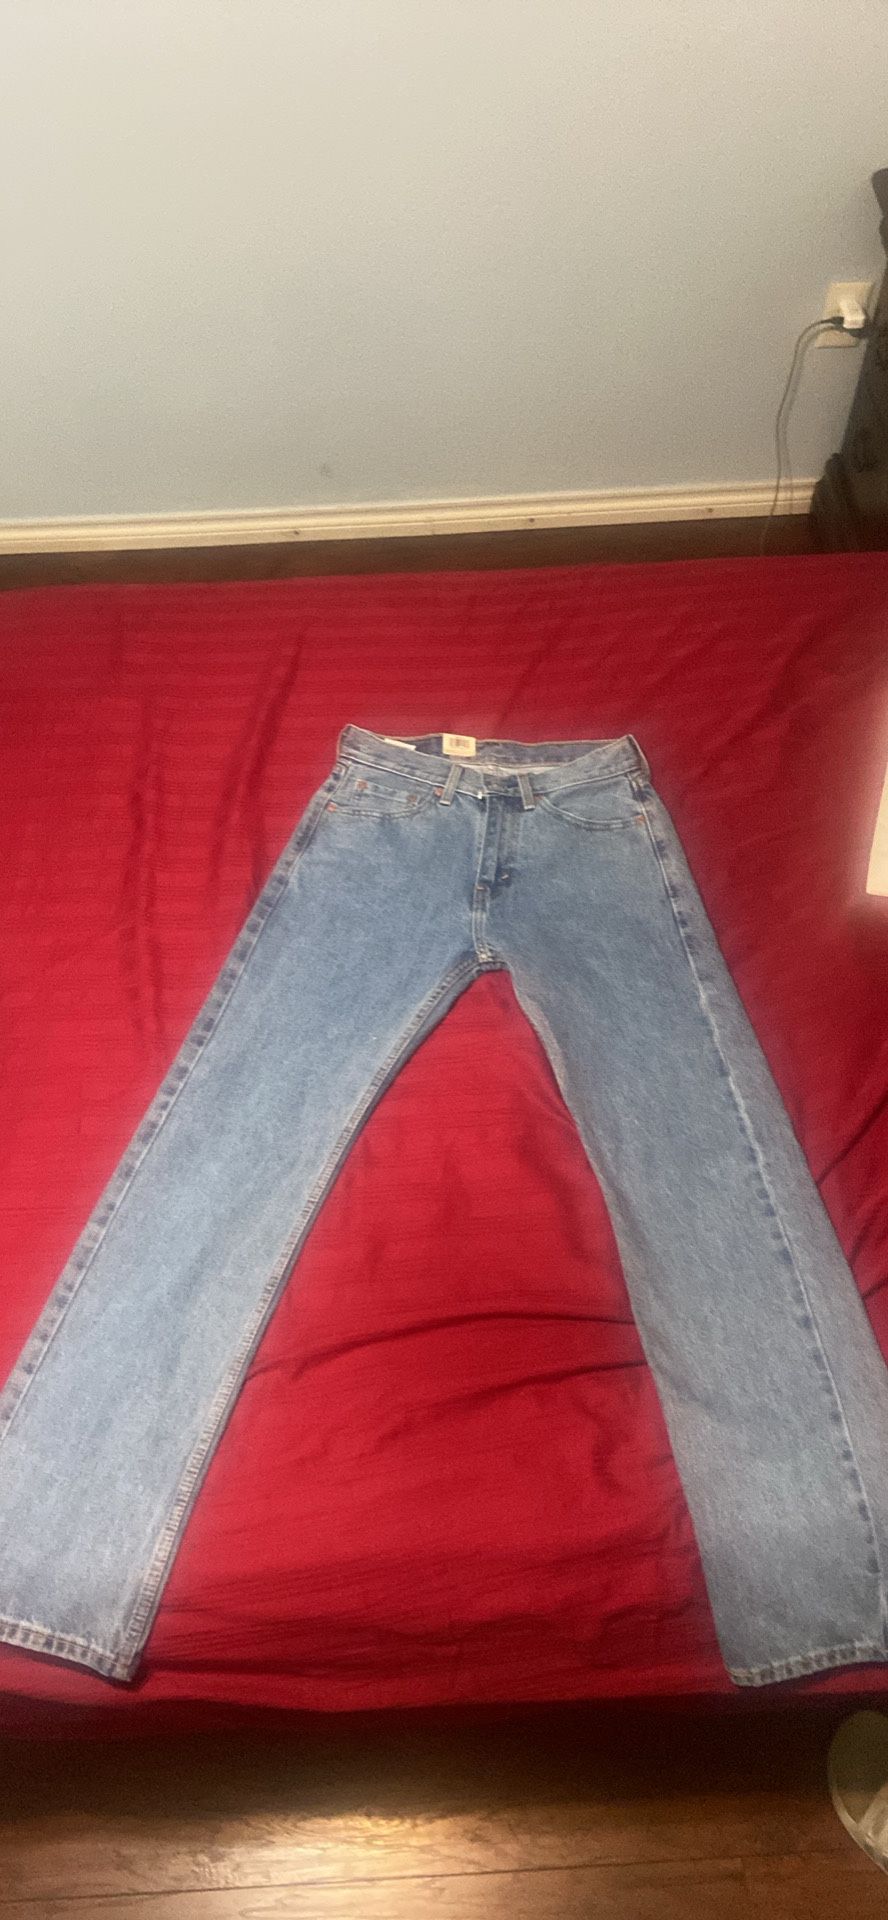 Levis (29x30) 505 Regular Fit Jeans